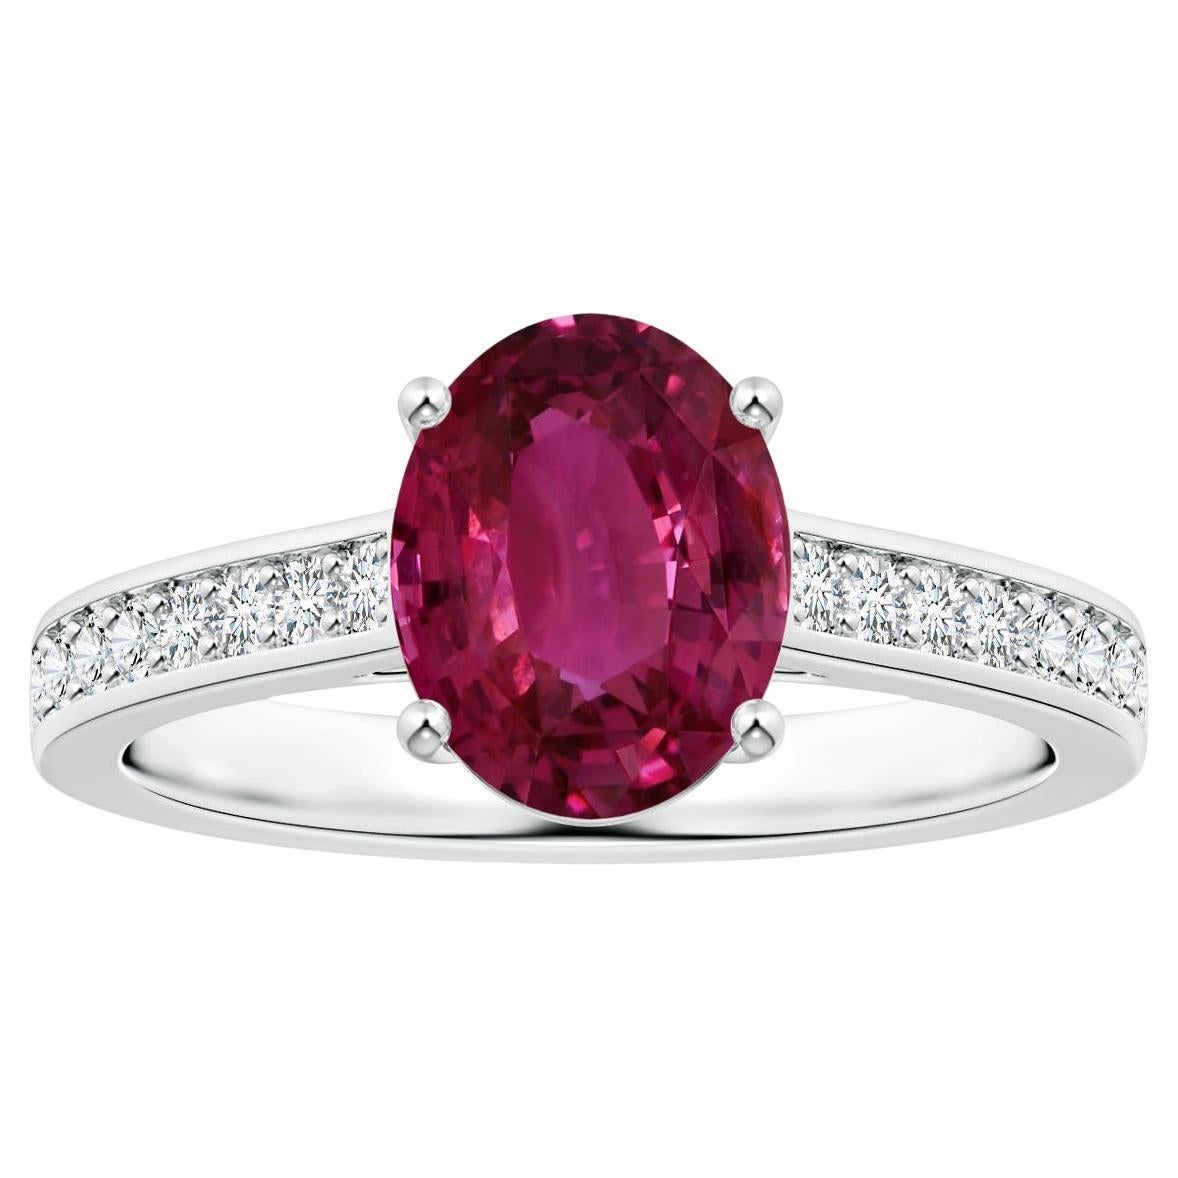 ANGARA Ring mit GIA-zertifiziertem ovalem rosa Saphir in Platin mit Diamanten in Zackenfassung